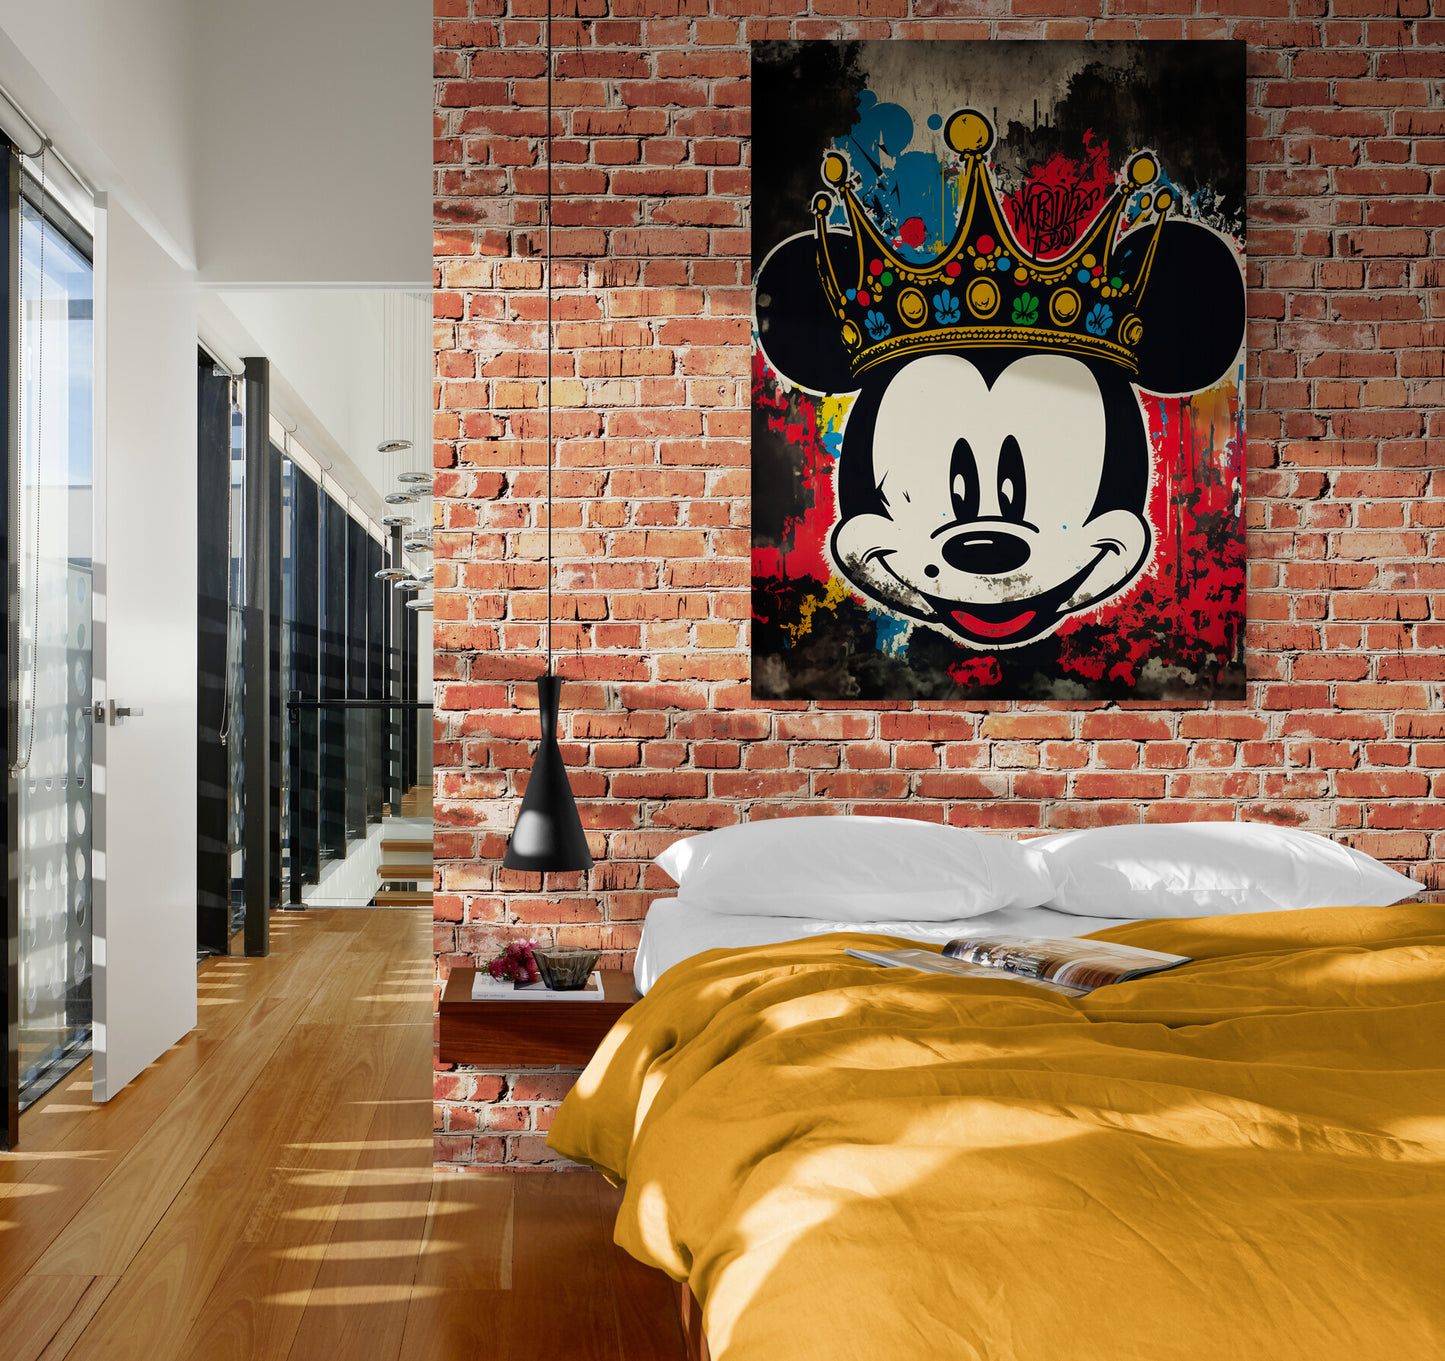 Dans une chambre adulte, le tableau "Mickey Street Art" accentue le côté urbain et loft de la piece